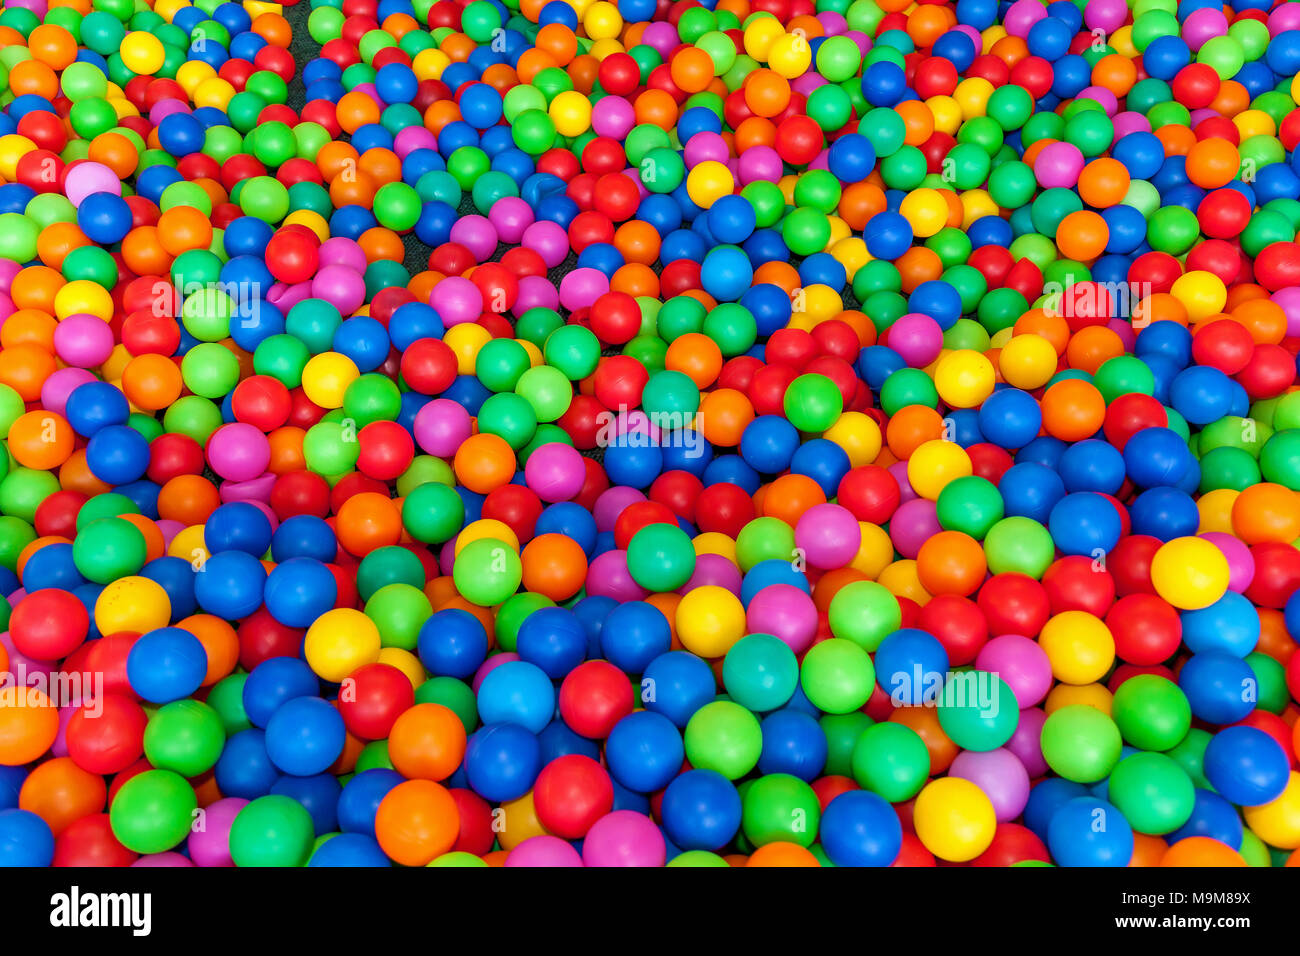 Un sacco di palle colorate in un parco giochi ball pool.la sfera con  coloratissime palle in plastica nei bambini di un centro di  intrattenimento. Piscina con sfere luminose sullo sfondo Foto stock -